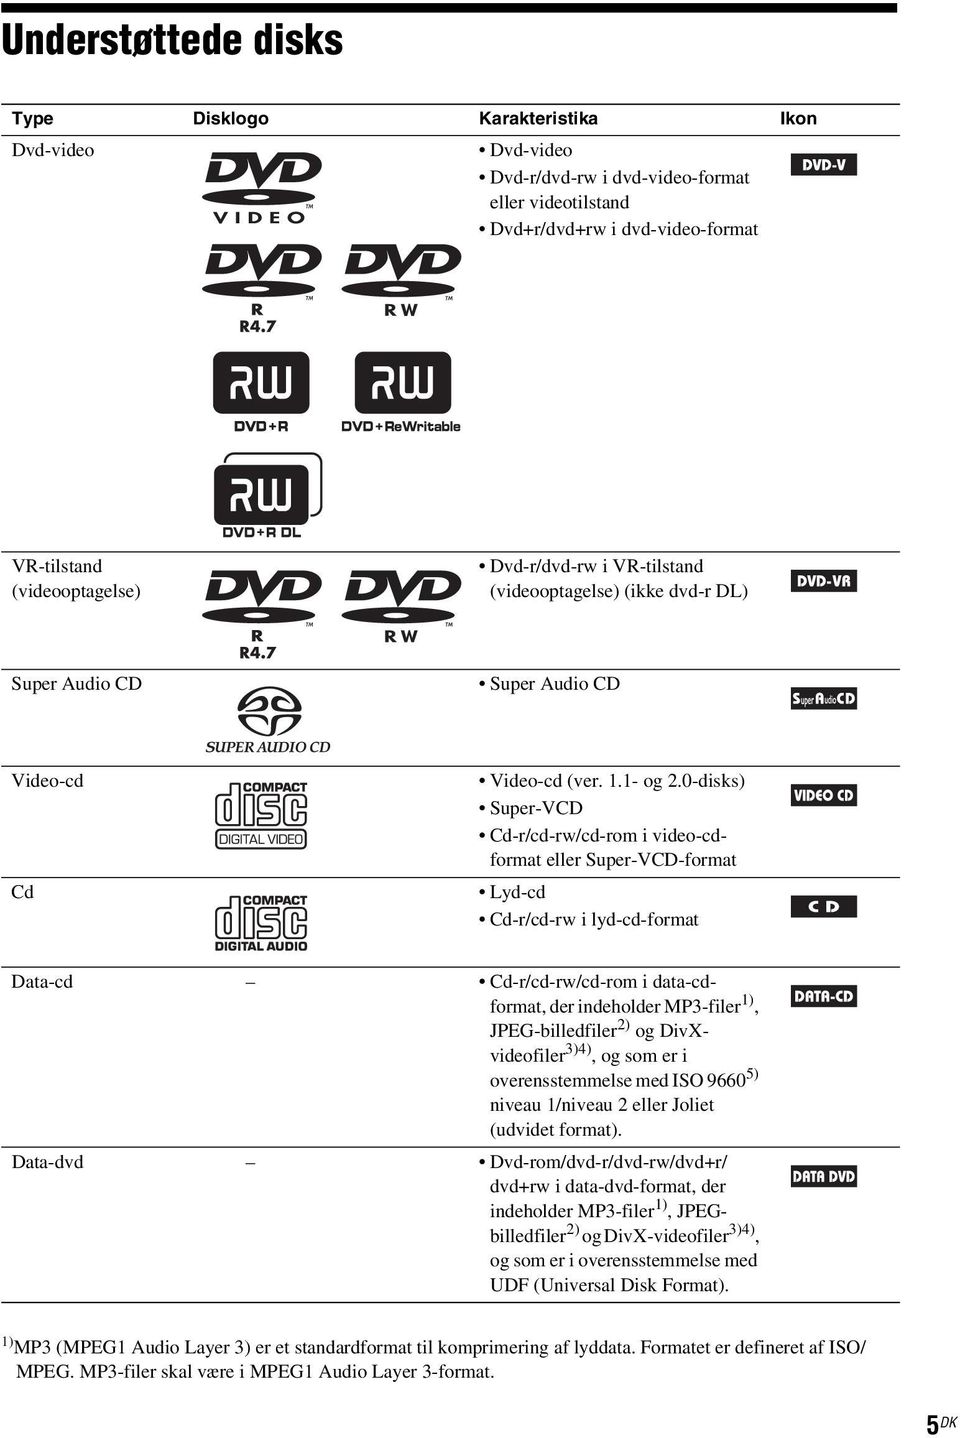 0-disks) Super-VCD Cd-r/cd-rw/cd-rom i video-cdformat eller Super-VCD-format Lyd-cd Cd-r/cd-rw i lyd-cd-format Data-cd Cd-r/cd-rw/cd-rom i data-cdformat, der indeholder MP3-filer 1), JPEG-billedfiler